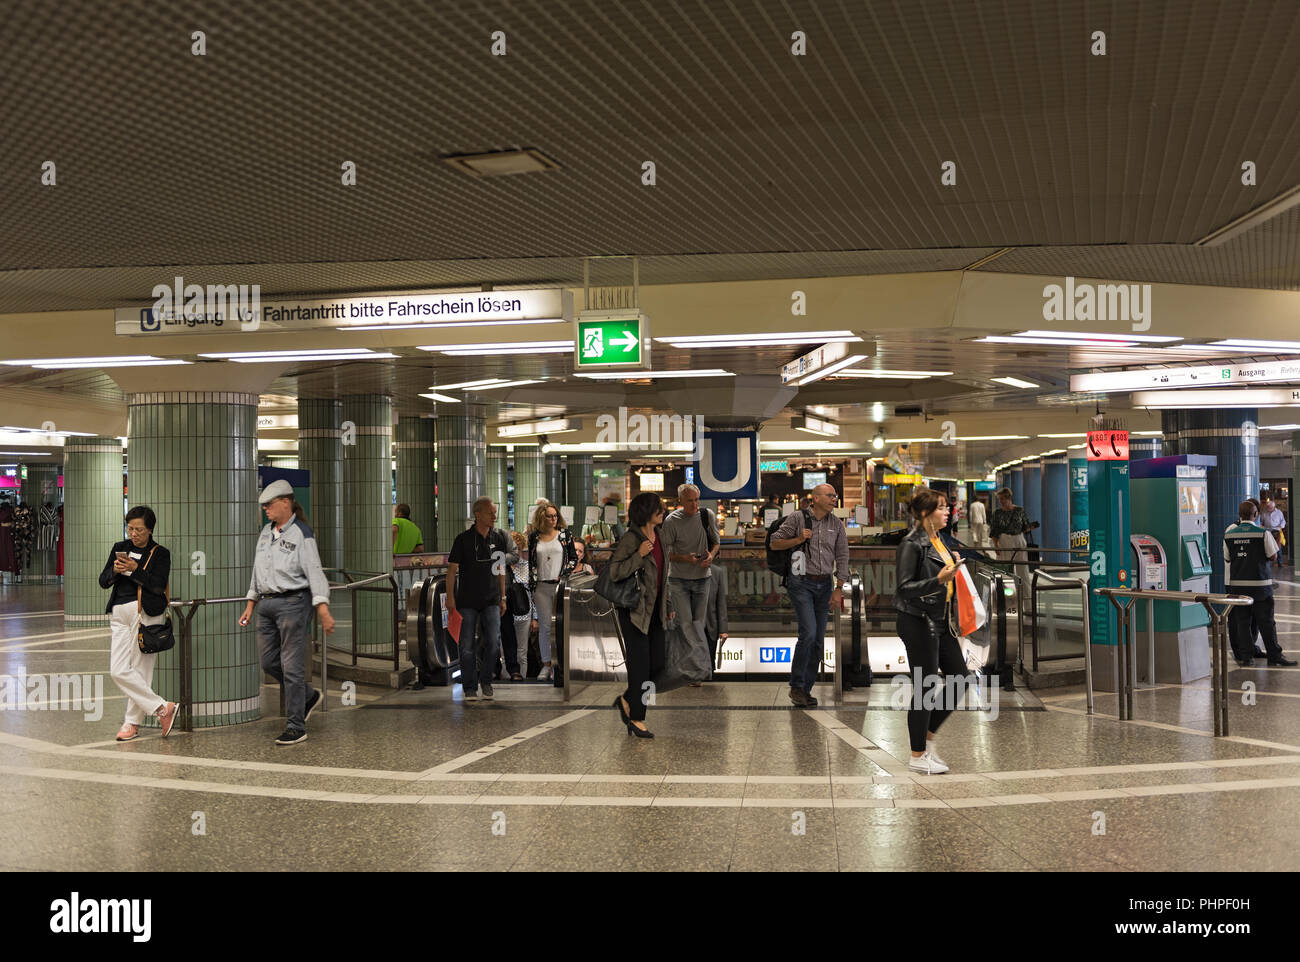 Les passagers de l'escalier roulant dans la station de métro Hauptwache, Francfort sur Main, Allemagne. Banque D'Images